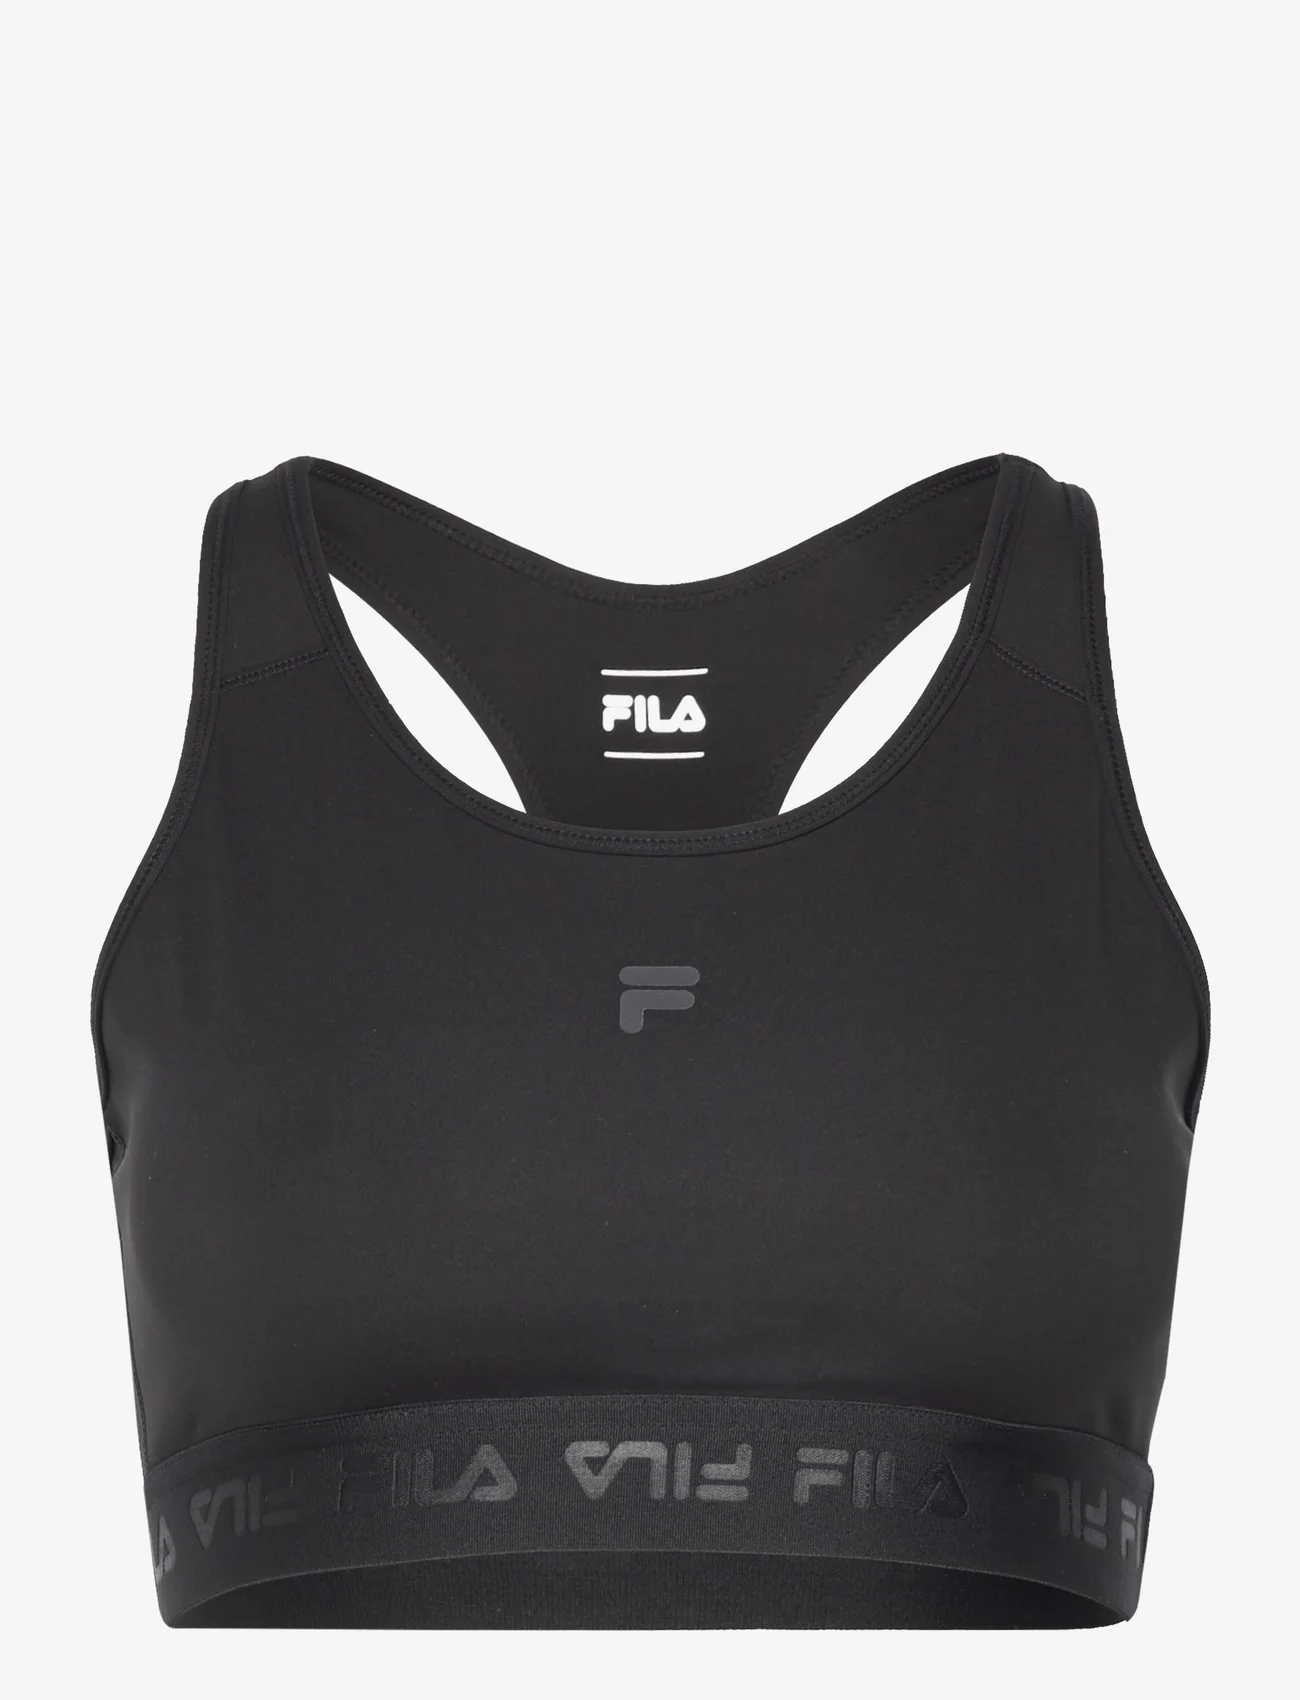 FILA - REINOSA running bra - women - black - 0